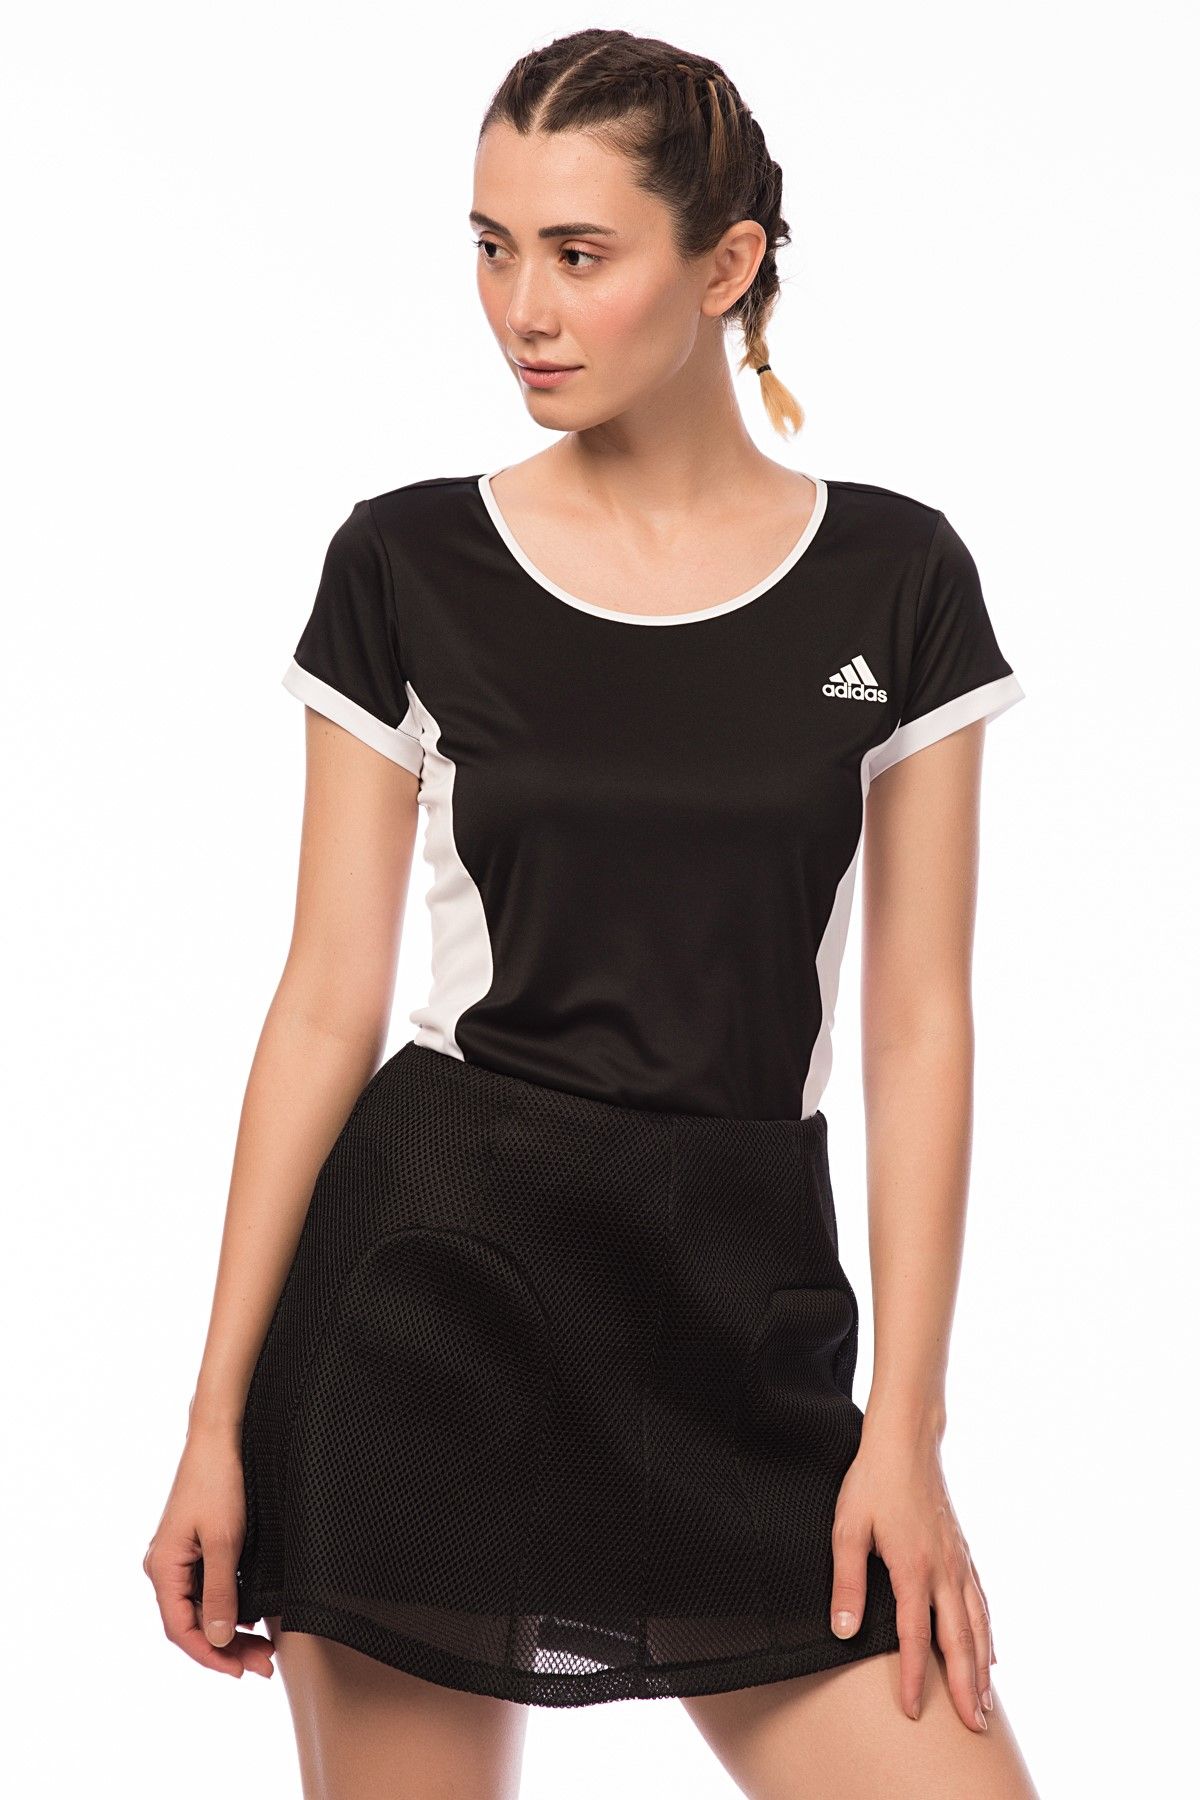 adidas Kadın Tenis T-shirt - Court Tee - AJ6054